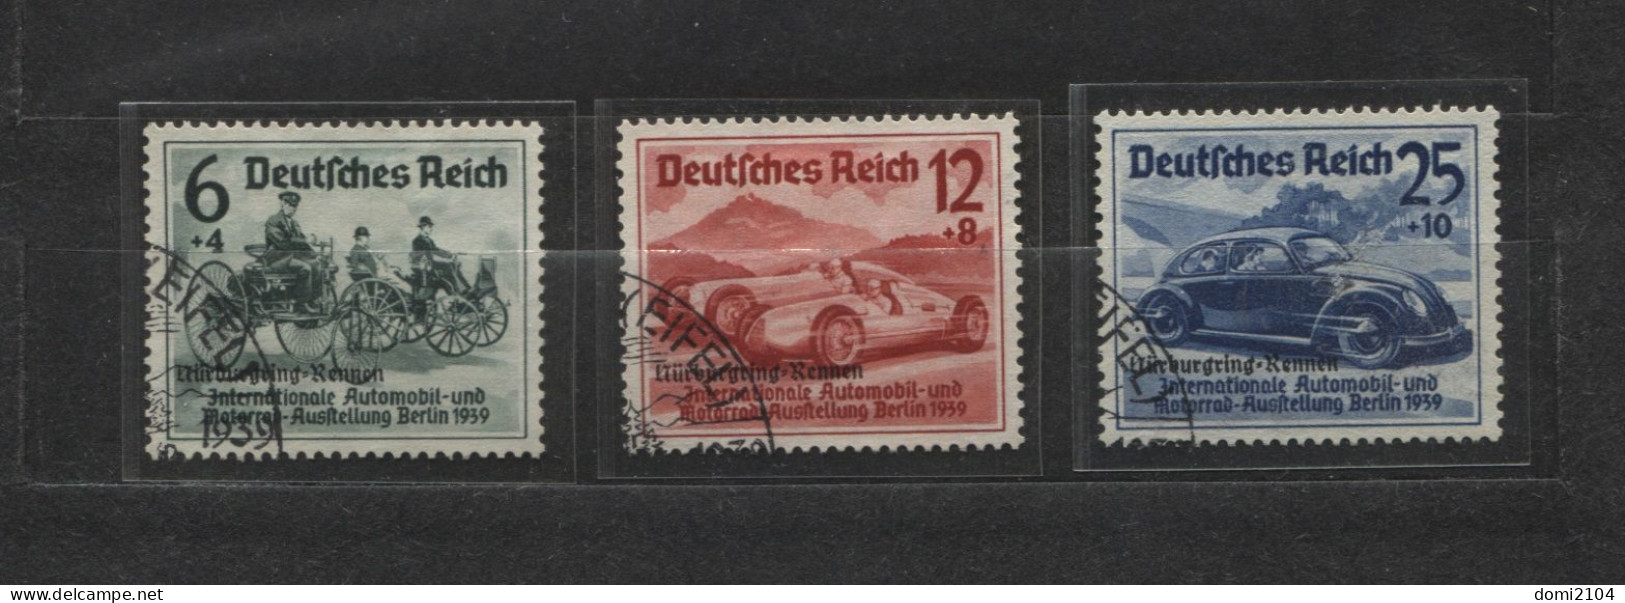 Deutsches Reich # 695-7 Nürburgring-Rennen Überdruckserie Sonderstempel - Ongebruikt